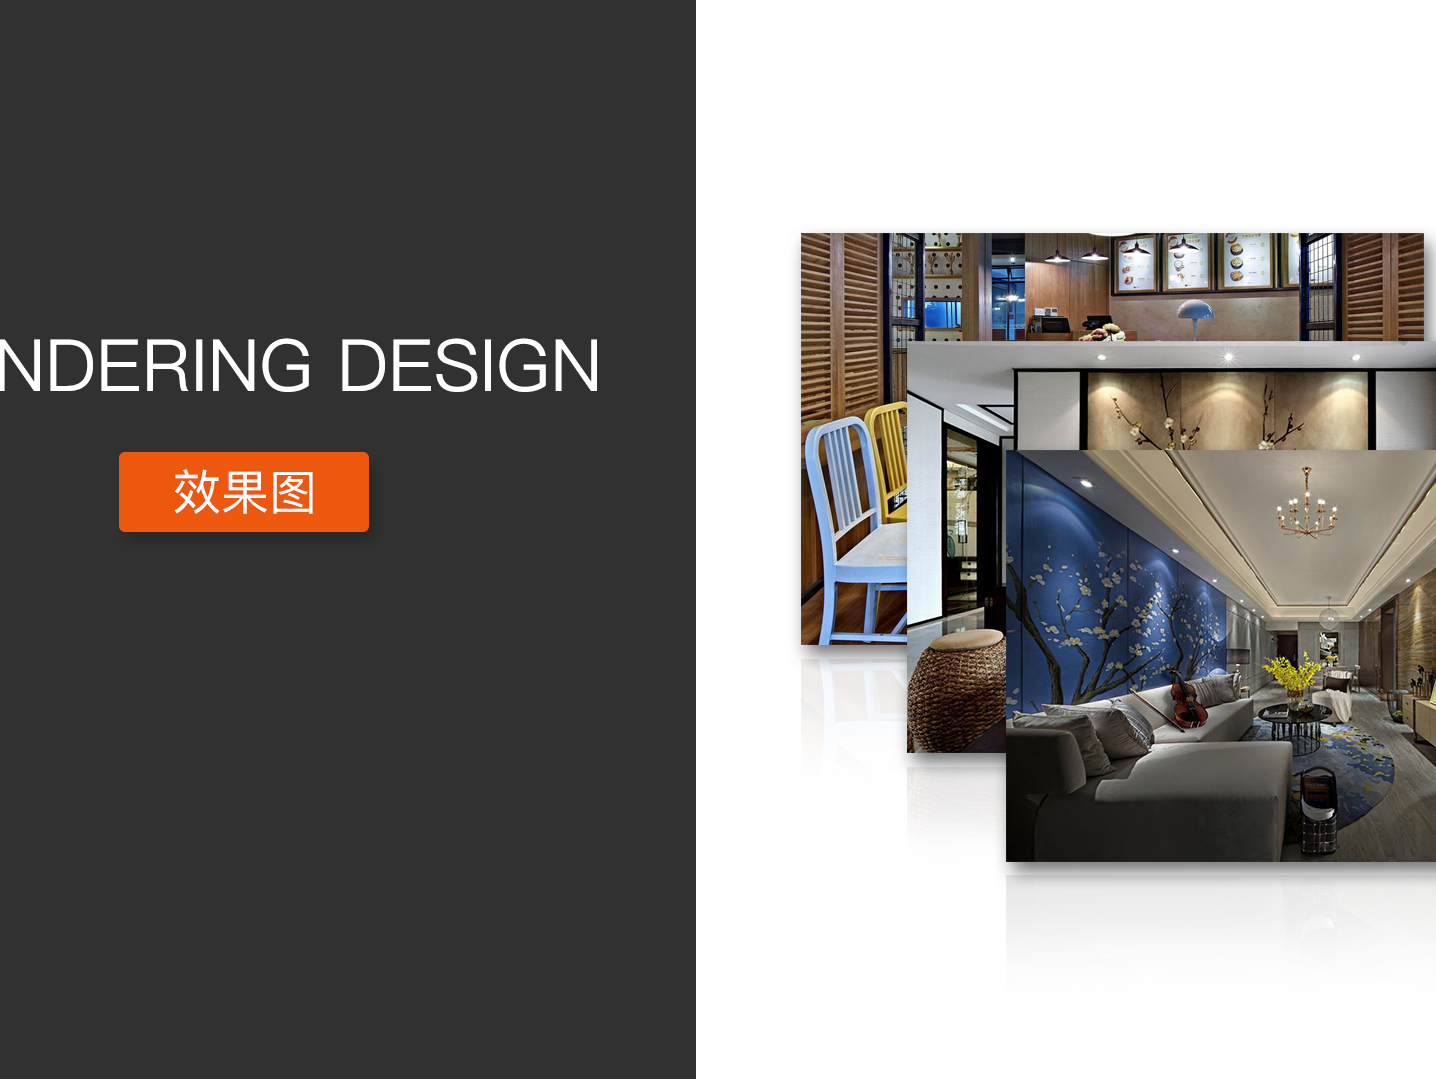 专业承接室内外效果图施工图-CND设计网,中国设计网络首选品牌